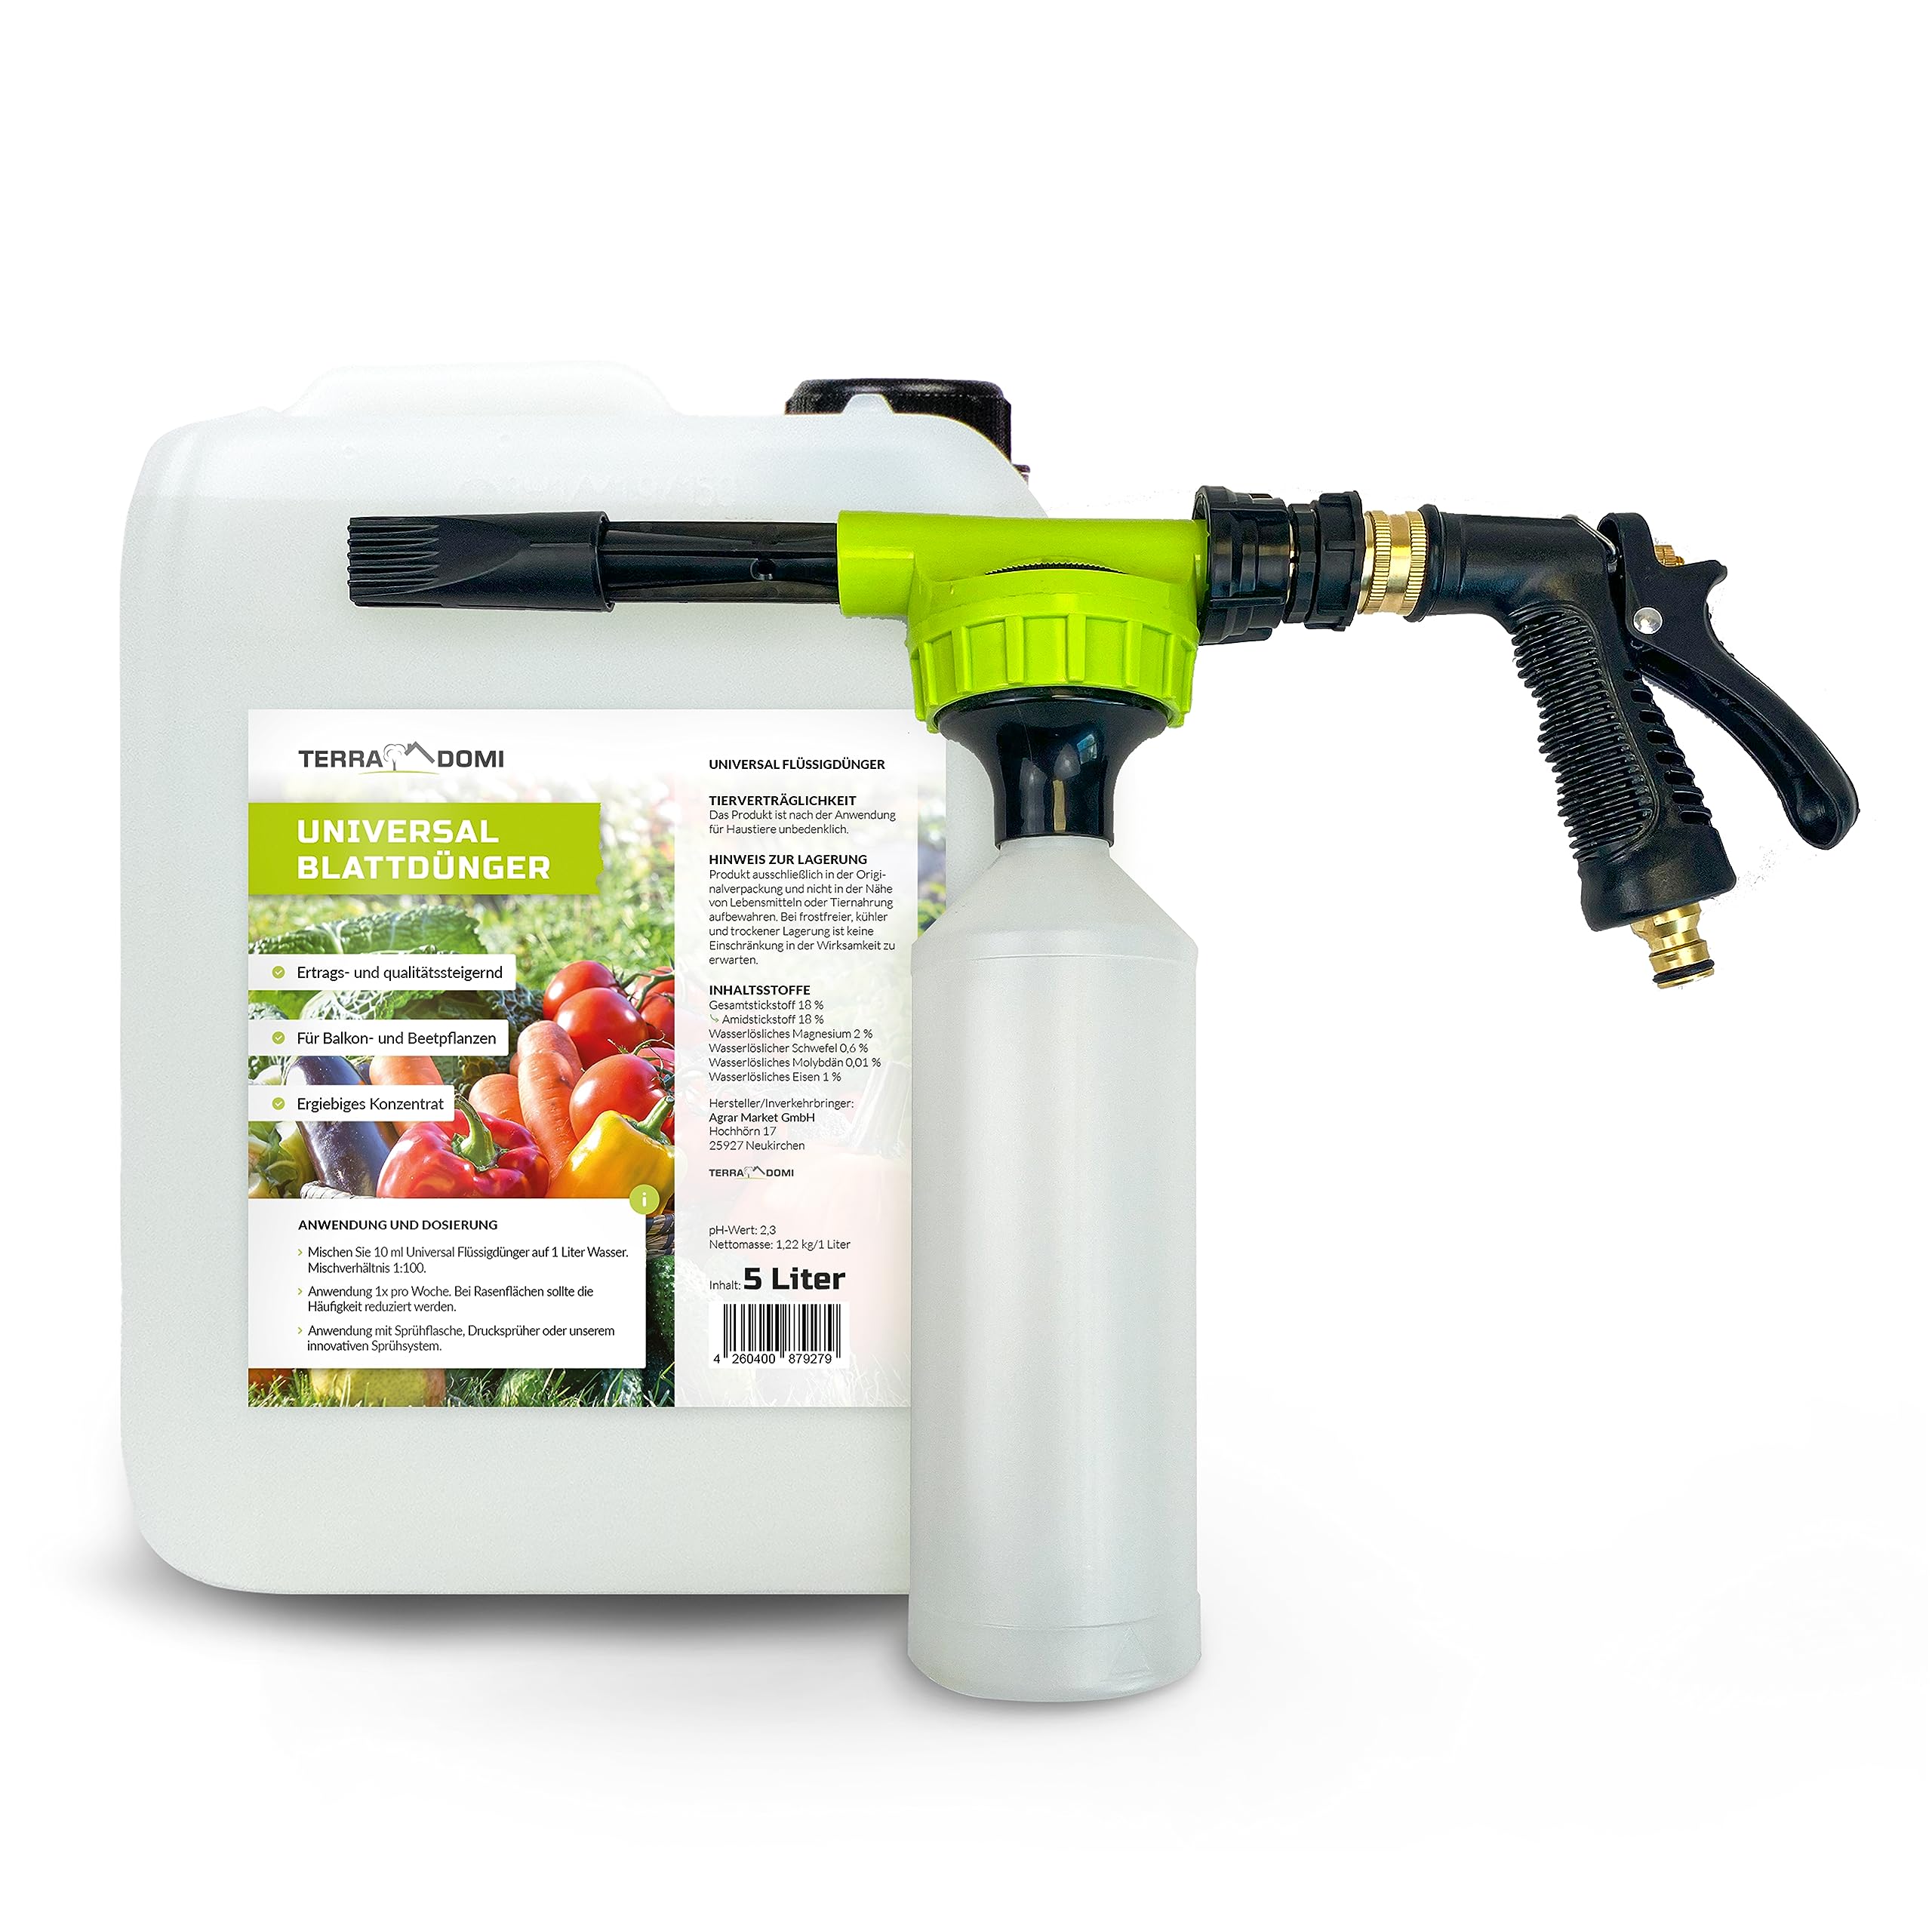 TerraDomi Blattdünger 5 Liter Universal + Sprühsystem | Konzentrat für Rasen, Gemüse und Beete | Spezialdünger mit wichtigen Mikronährstoffen | Für Pflanzen und Rasen im Außenbereich